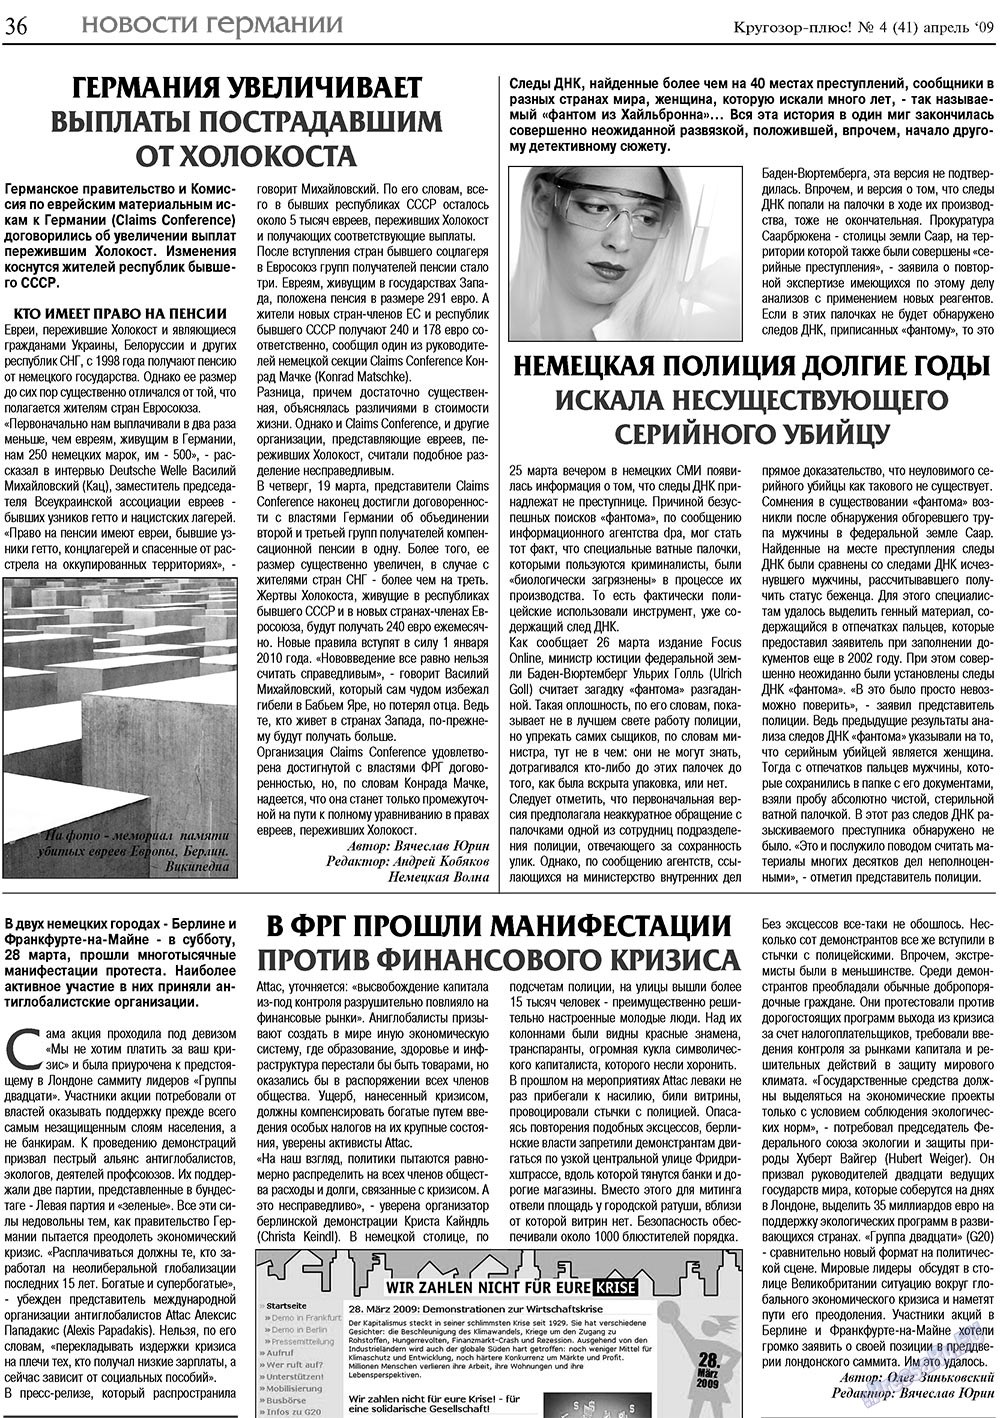 Кругозор плюс!, газета. 2009 №4 стр.36